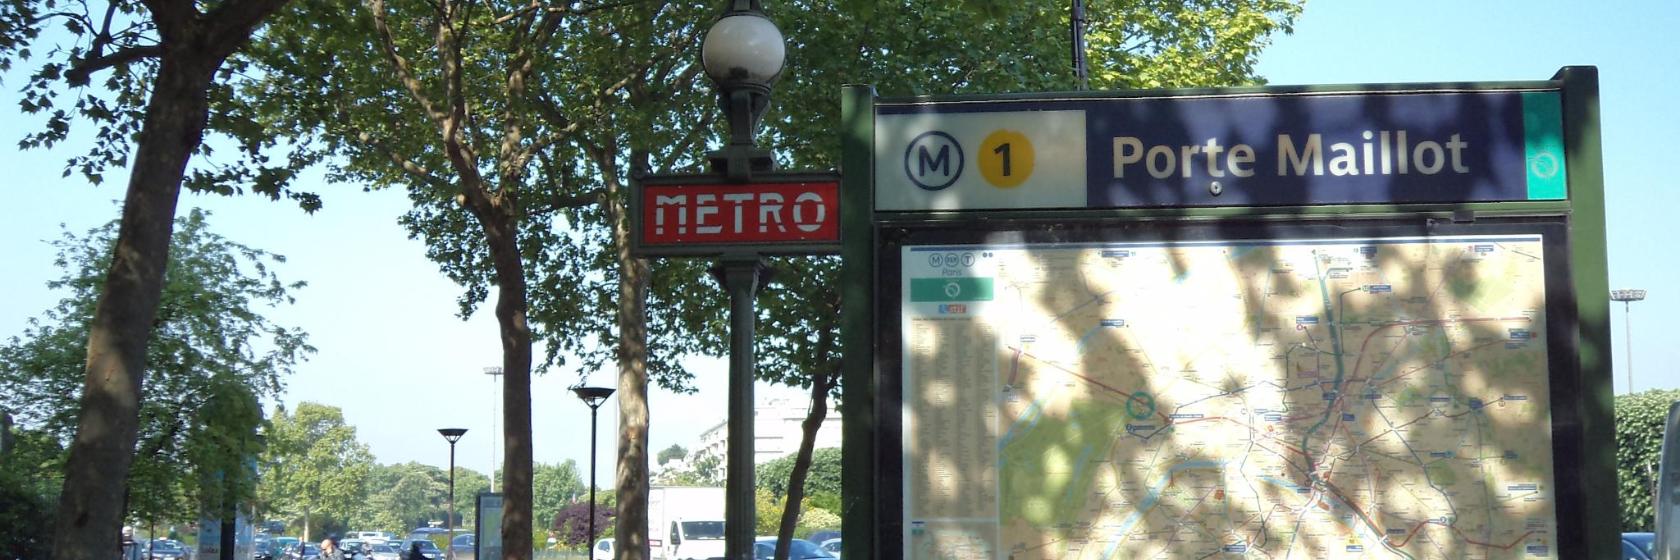 I 10 migliori hotel in zona Stazione Metro Porte Maillot e dintorni a Parigi,  Francia